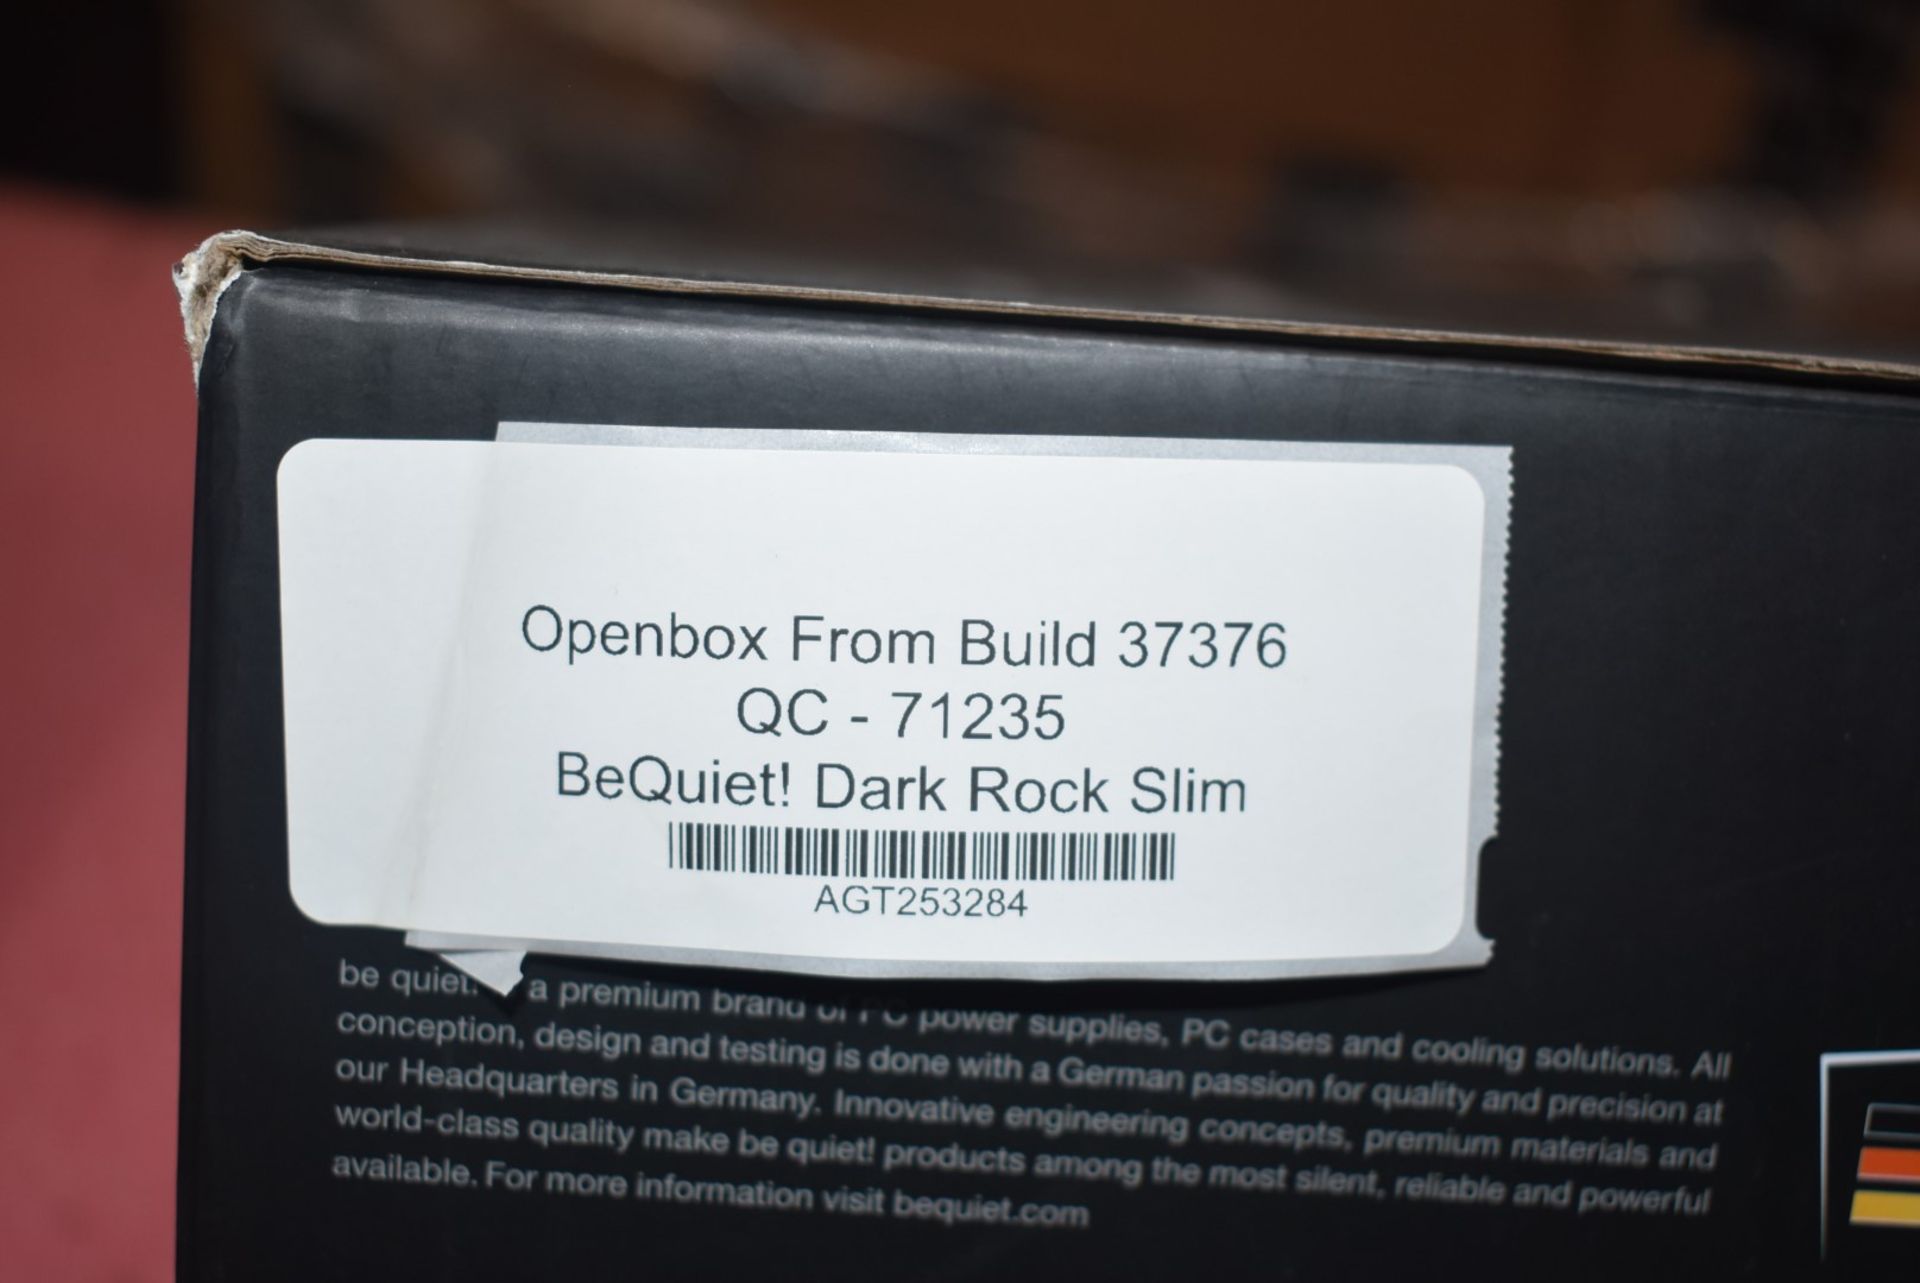 1 x BeQuiet Dark Rock Slim CPU Cooler With 120mm Fan - Image 2 of 5